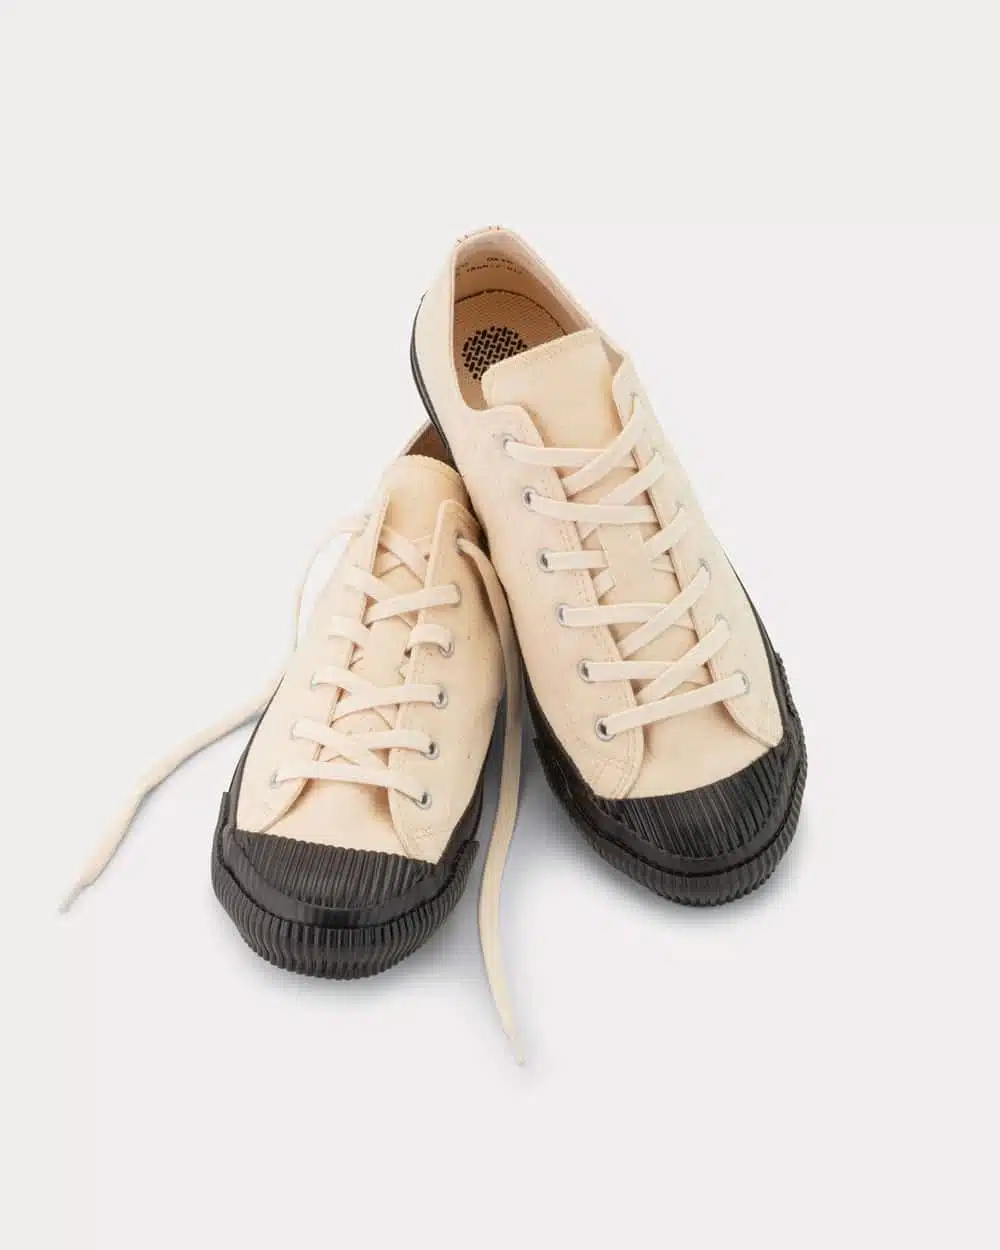 PRAS Shellcap Low Sneakers - Kinari/Black